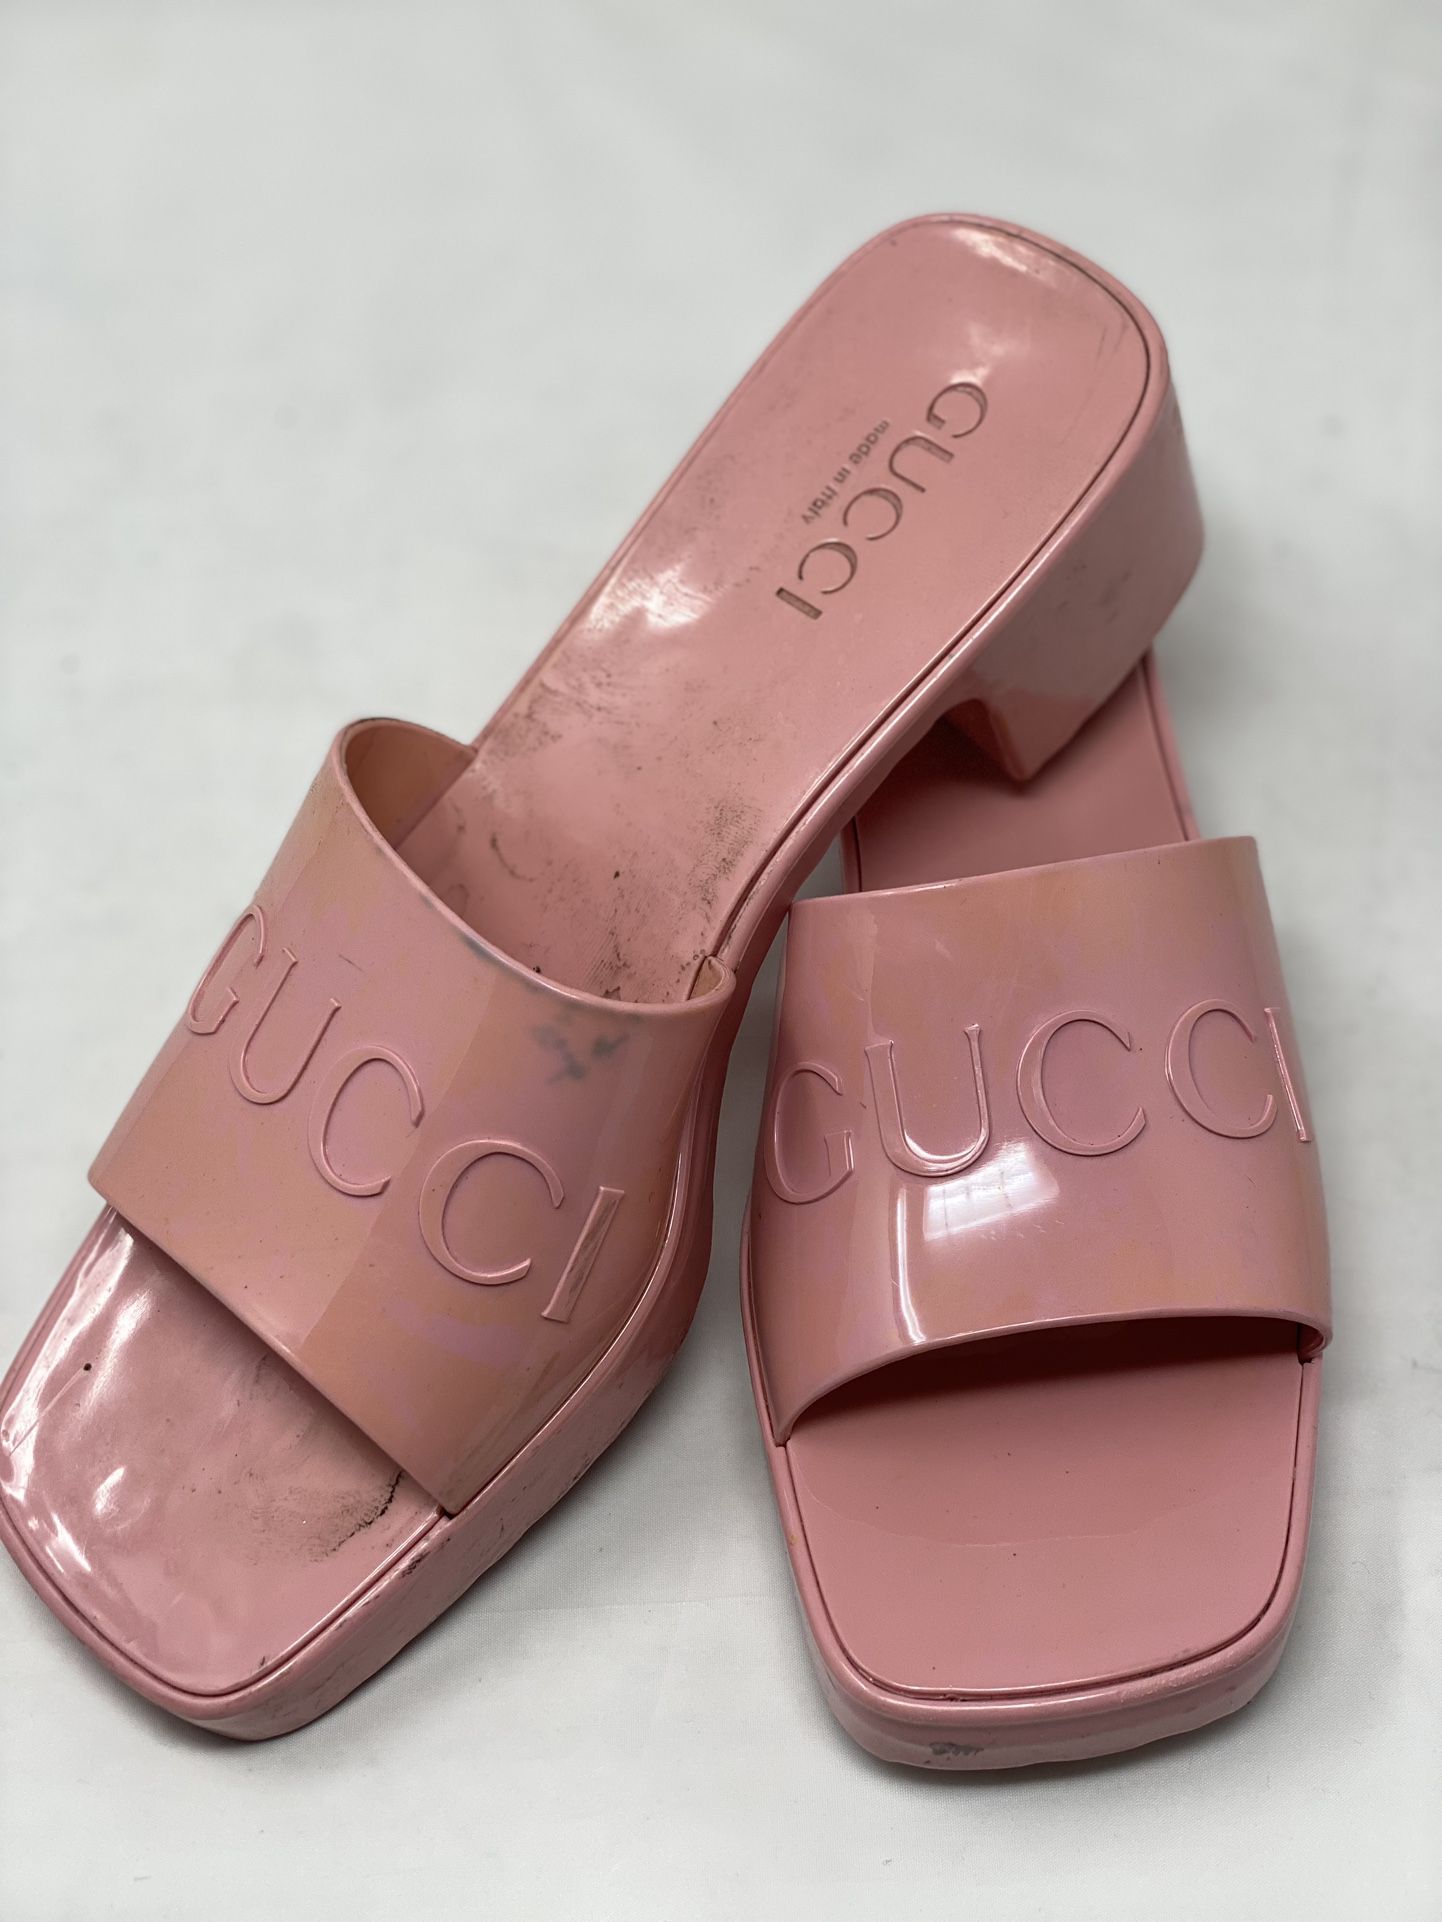 Pink Gucci Sandals Flip Flops Wedge Heel Size 9